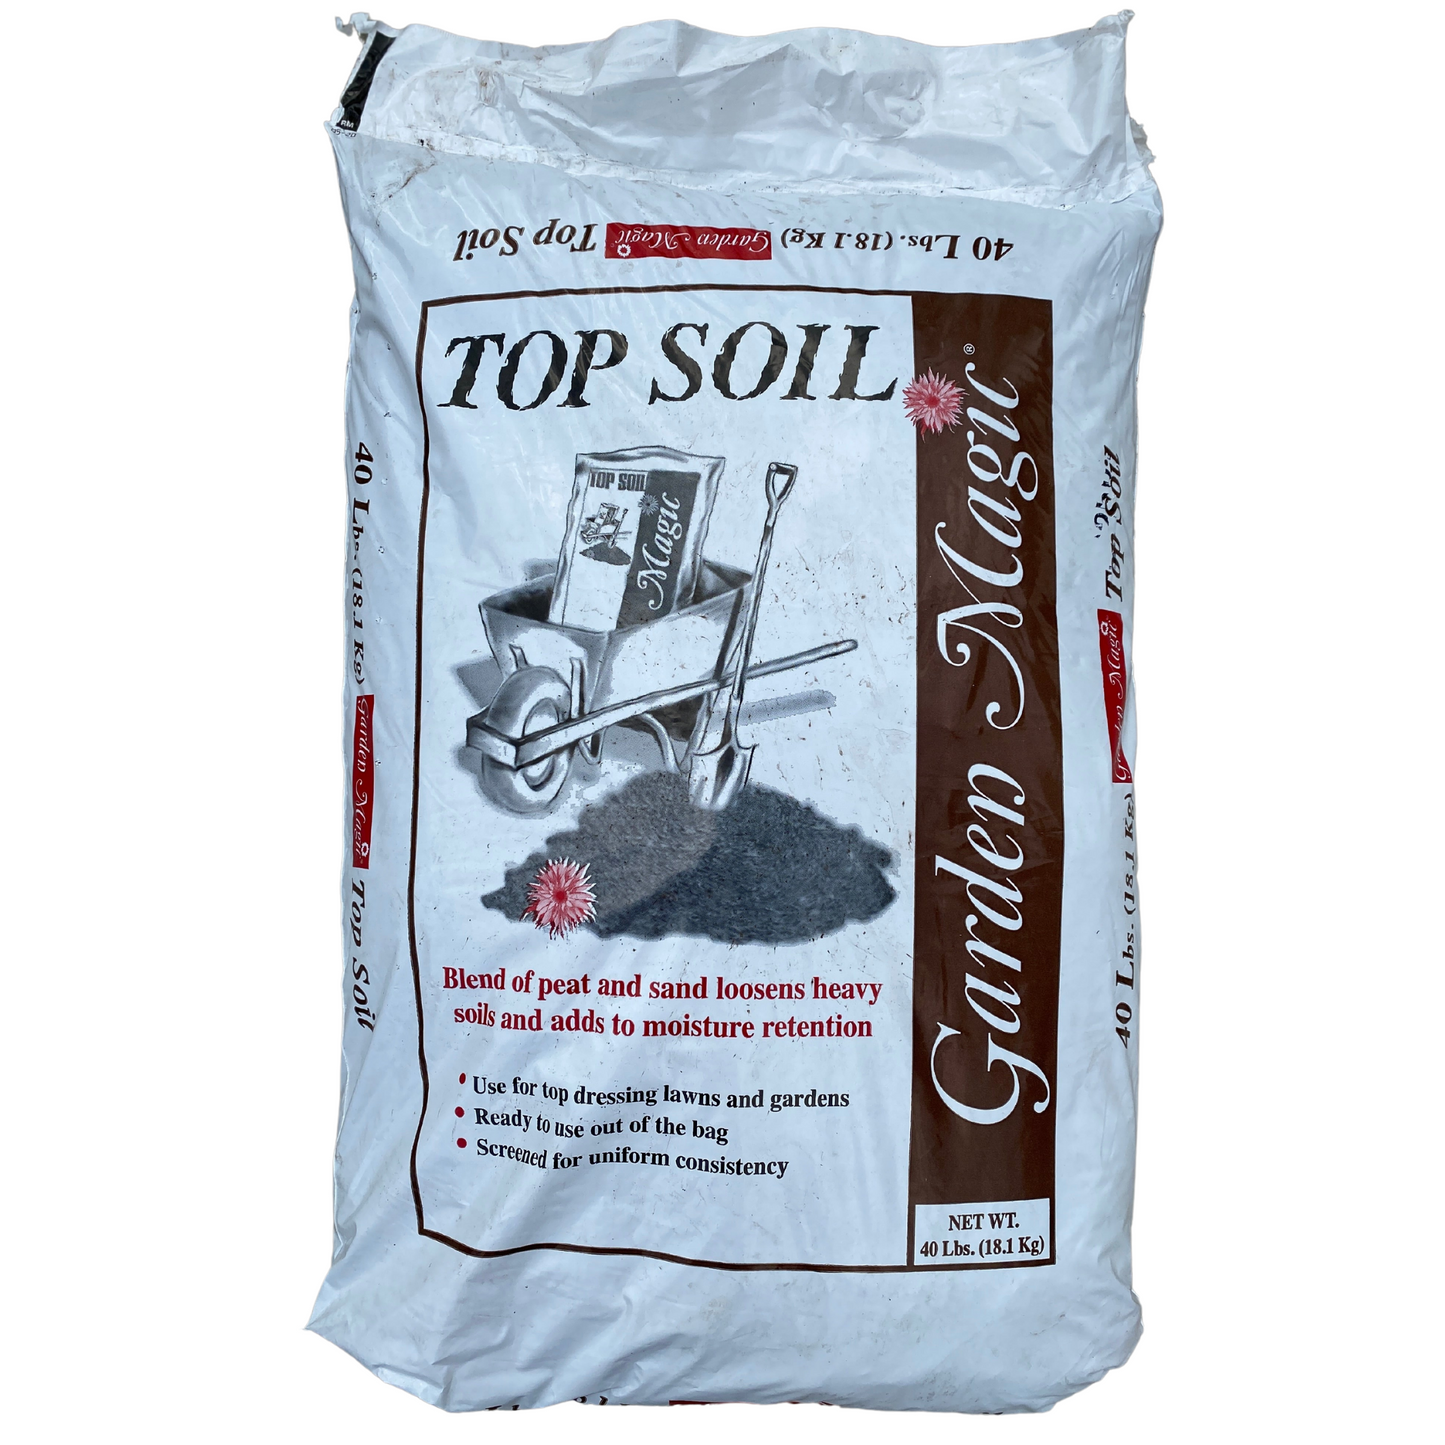 *10* Top Soil